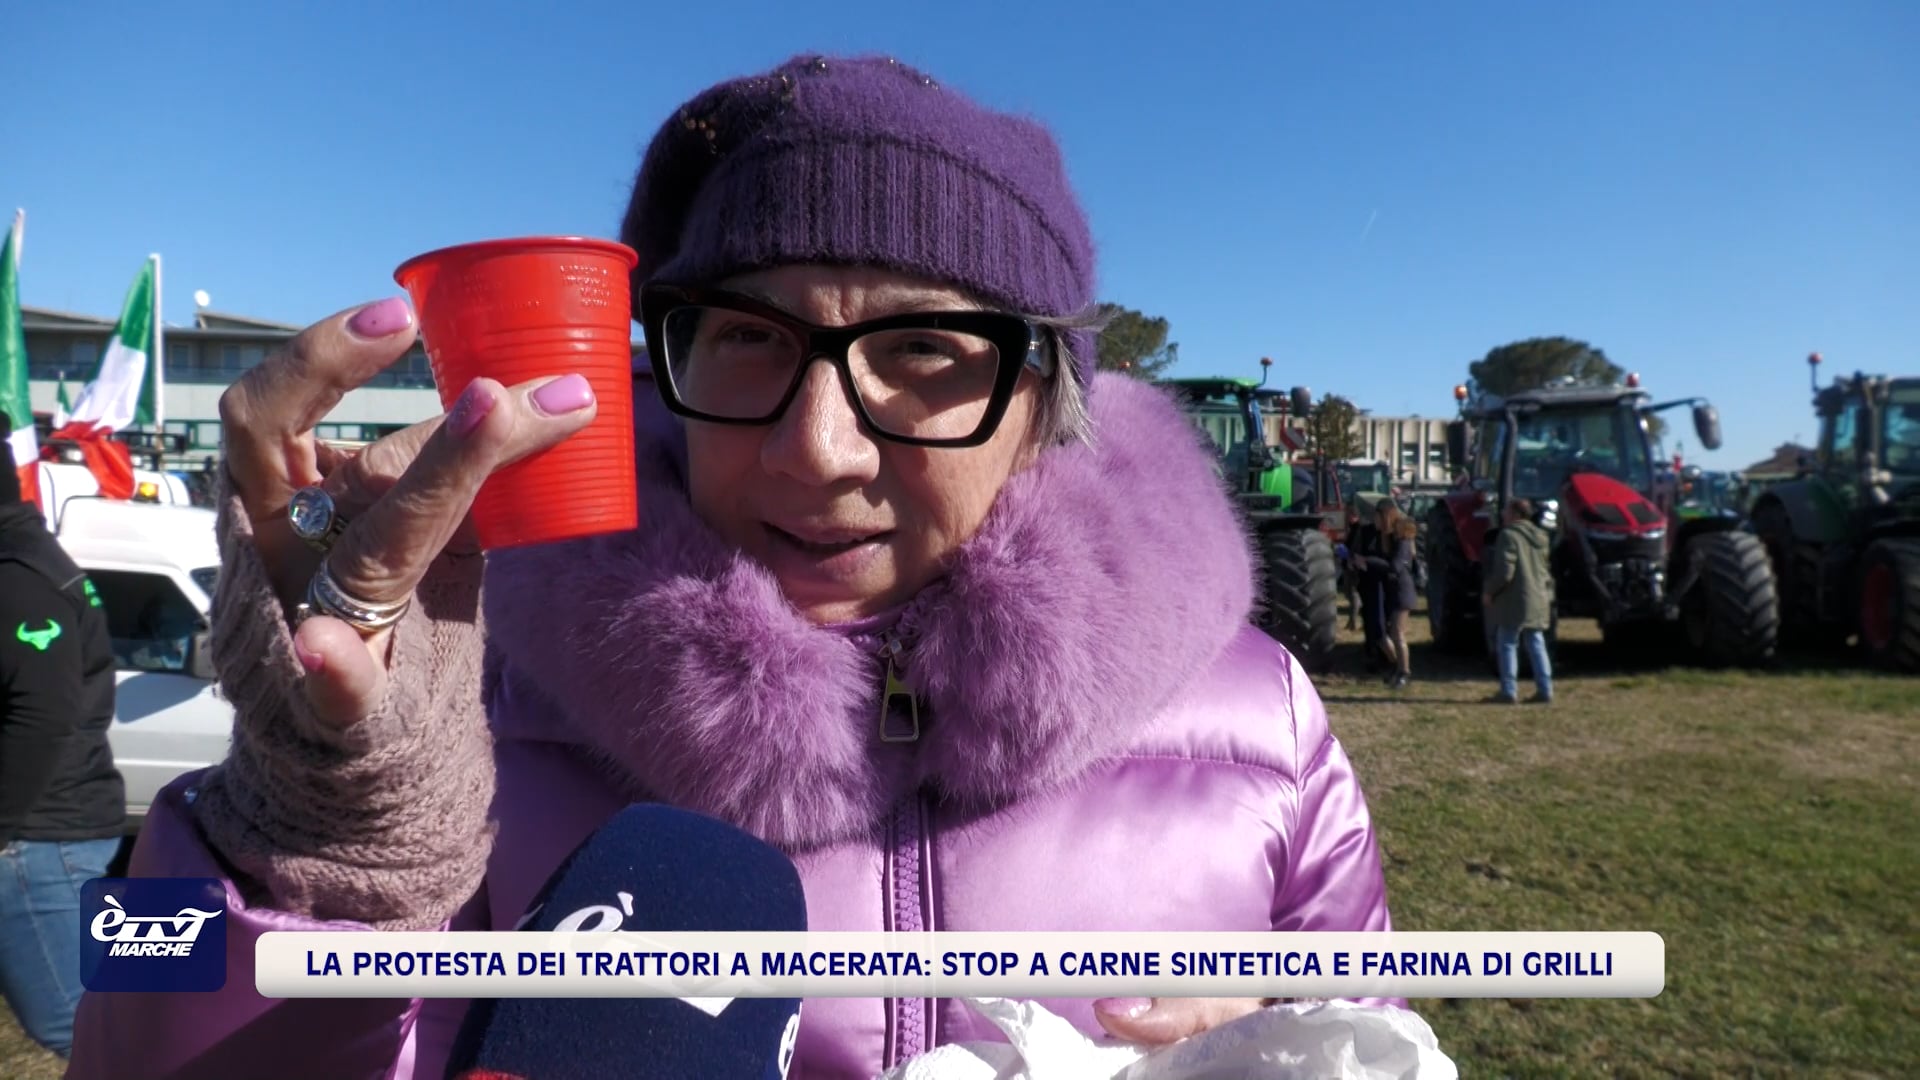 La protesta dei trattori a Macerata: stop a carne sintetica e farina di grilli - VIDEO